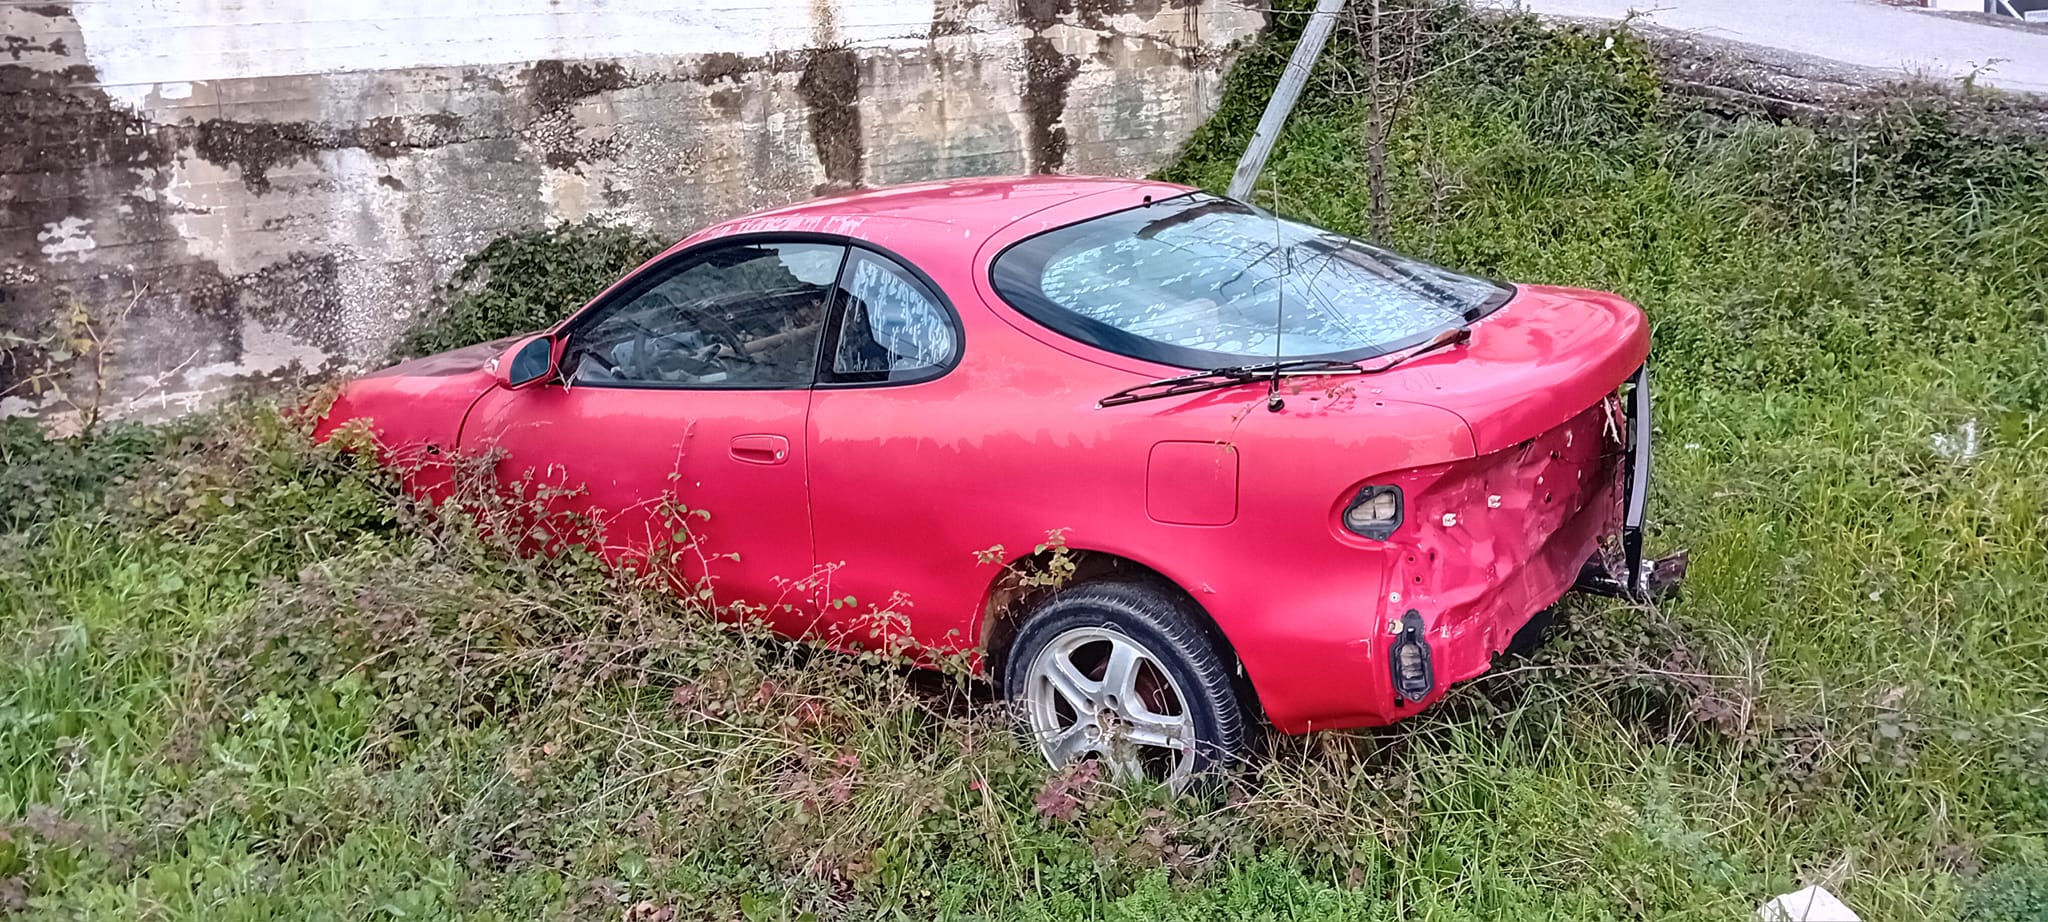 «Σκούπα» στα εγκαταλελειμμένα οχήματα βάζει Δήμος στην Εύβοια – Η έκκληση του αντιδημάρχου